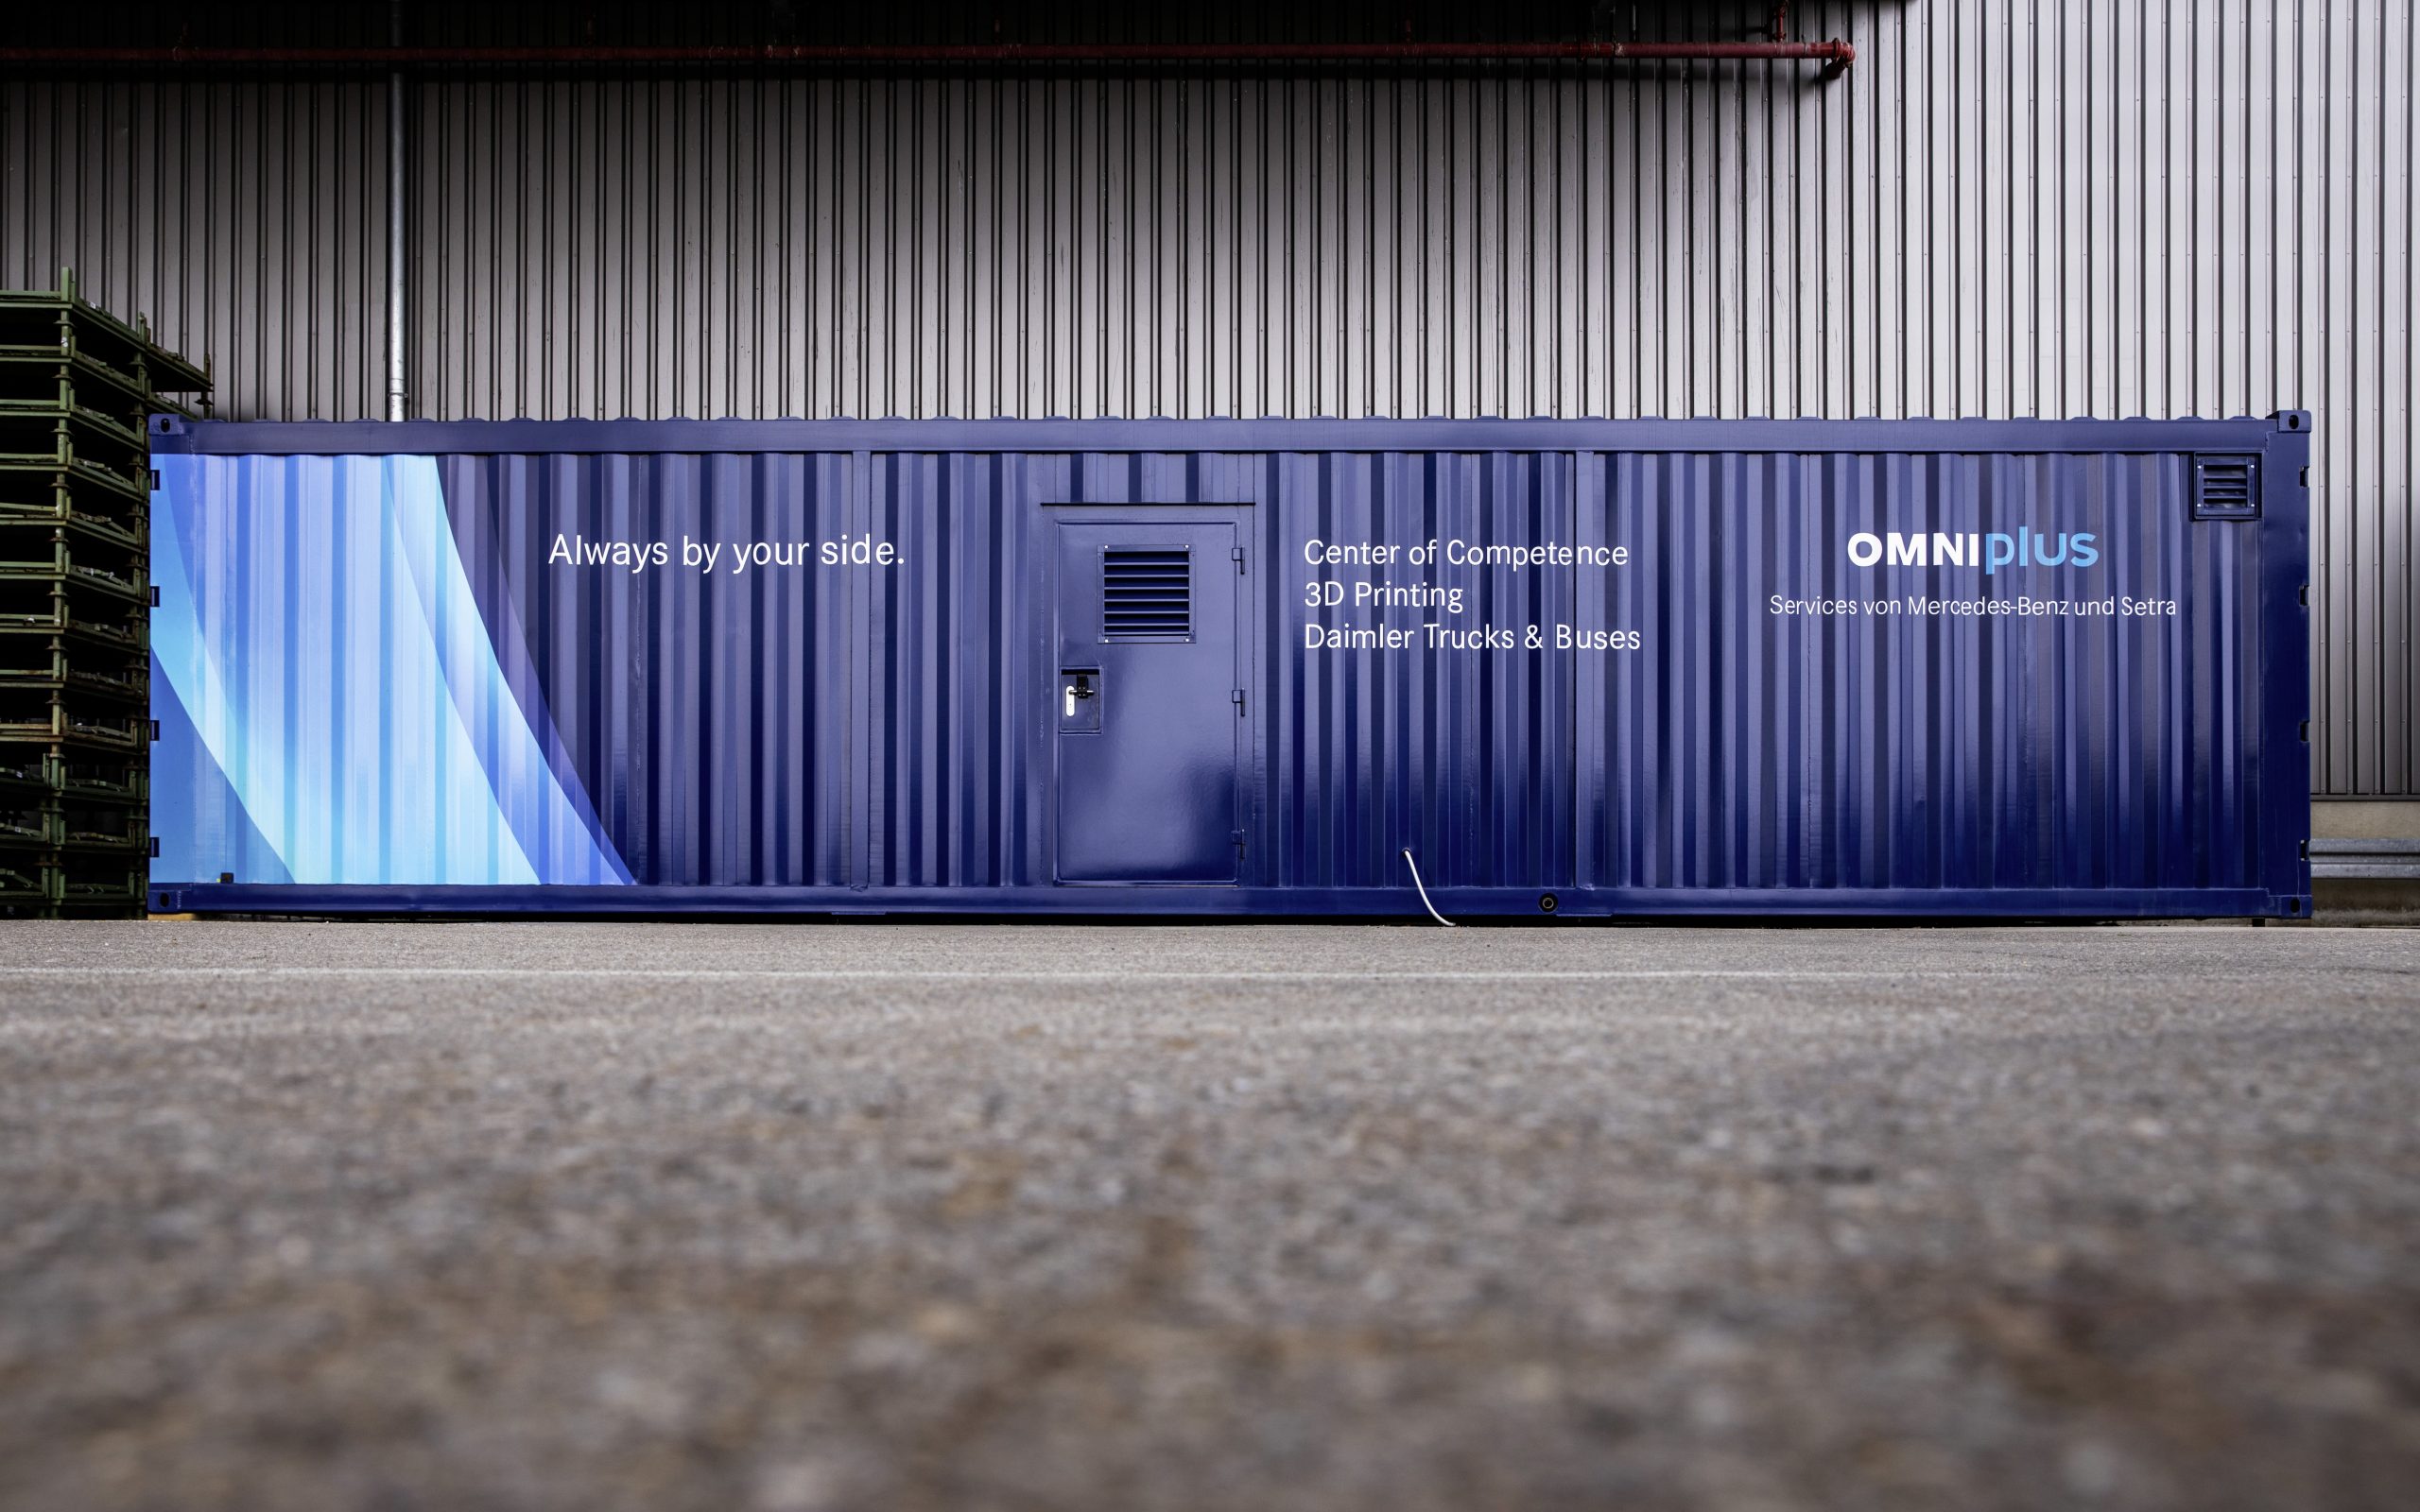 戴姆勒巴士and its service brand Omniplus have created a mobile printing centre for the decentralised production of 3D printed spare parts in order to be able to provide bus customers with spare parts more quickly. Photo via Daimler.